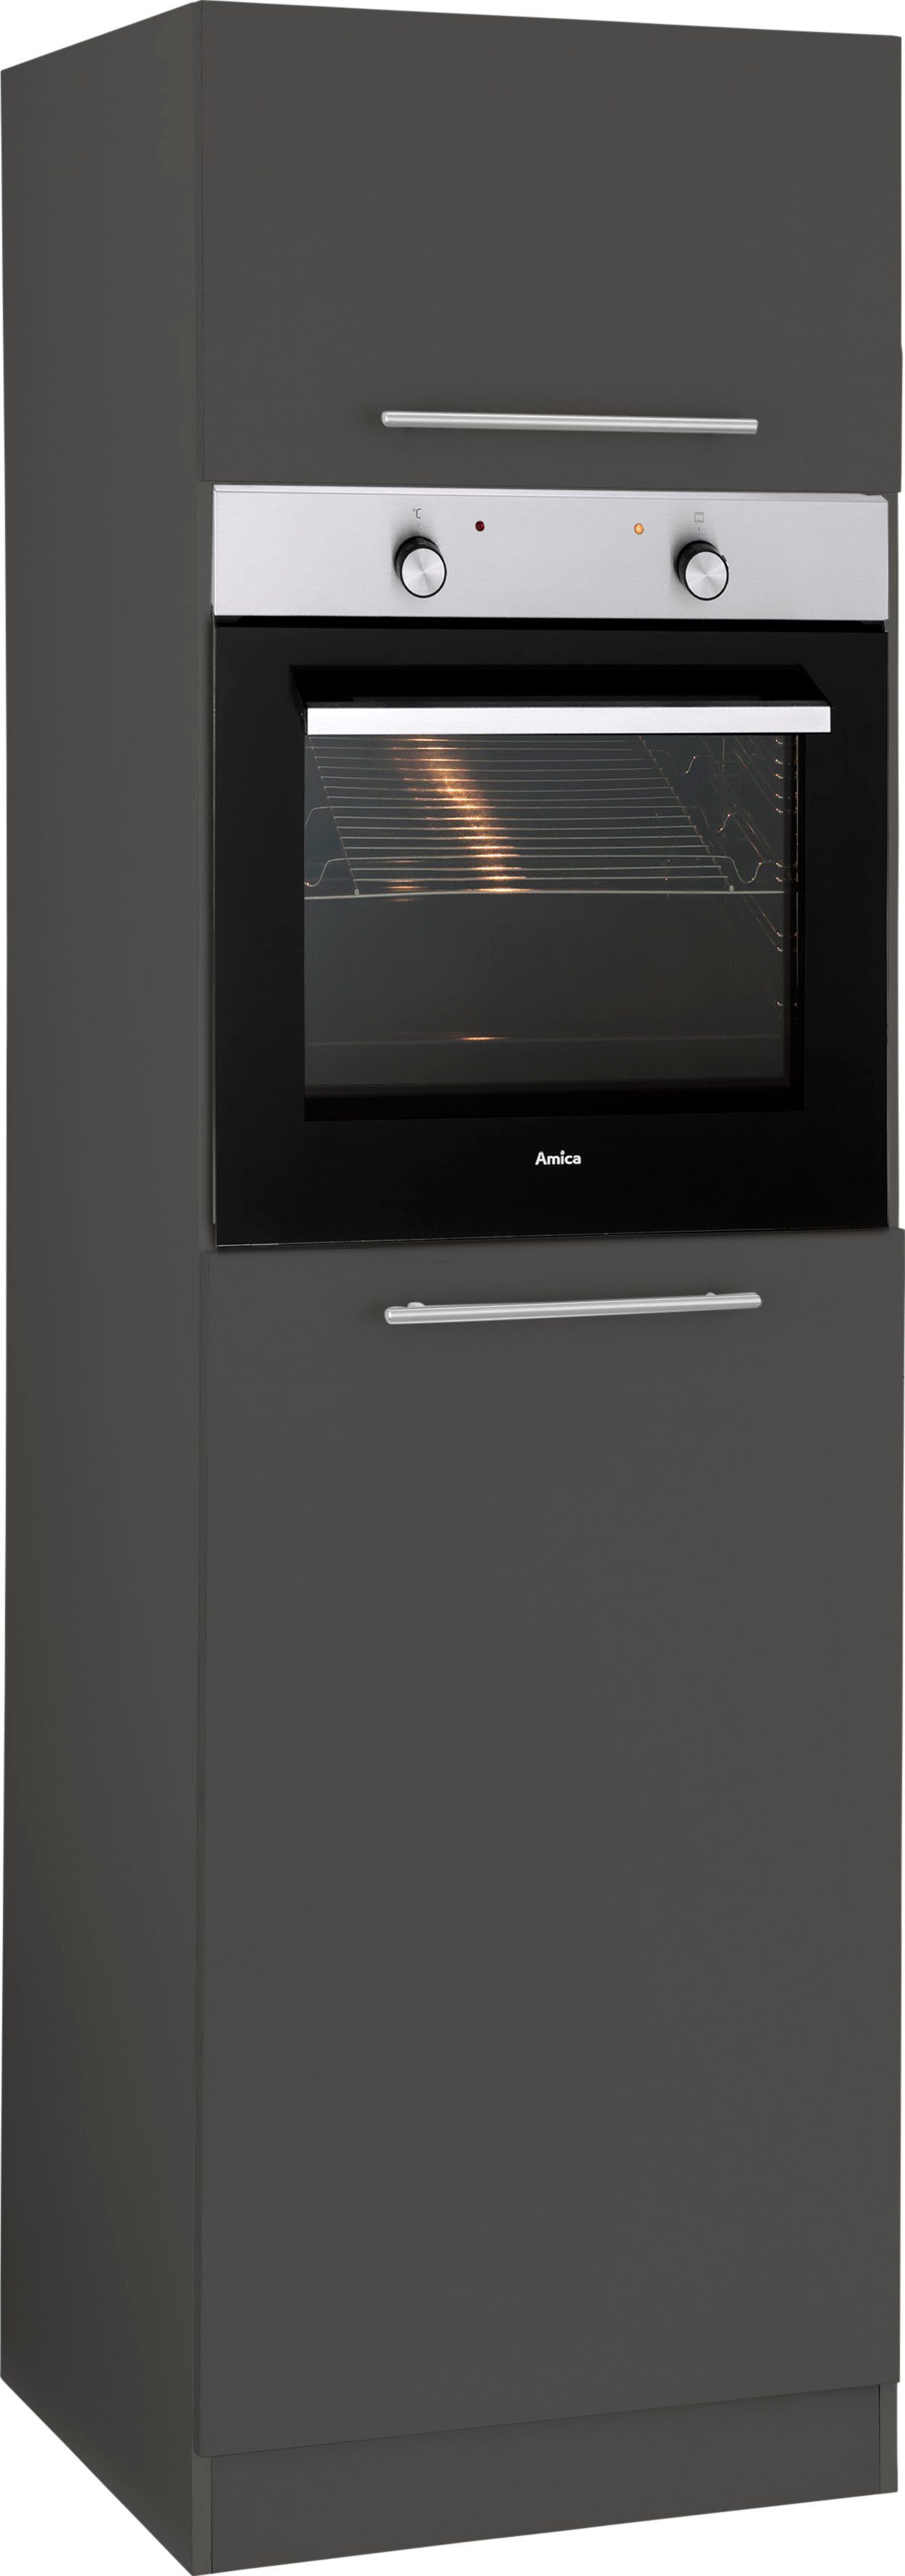 wiho Küchen Oven/koelkastombouw Unna 60 cm breed